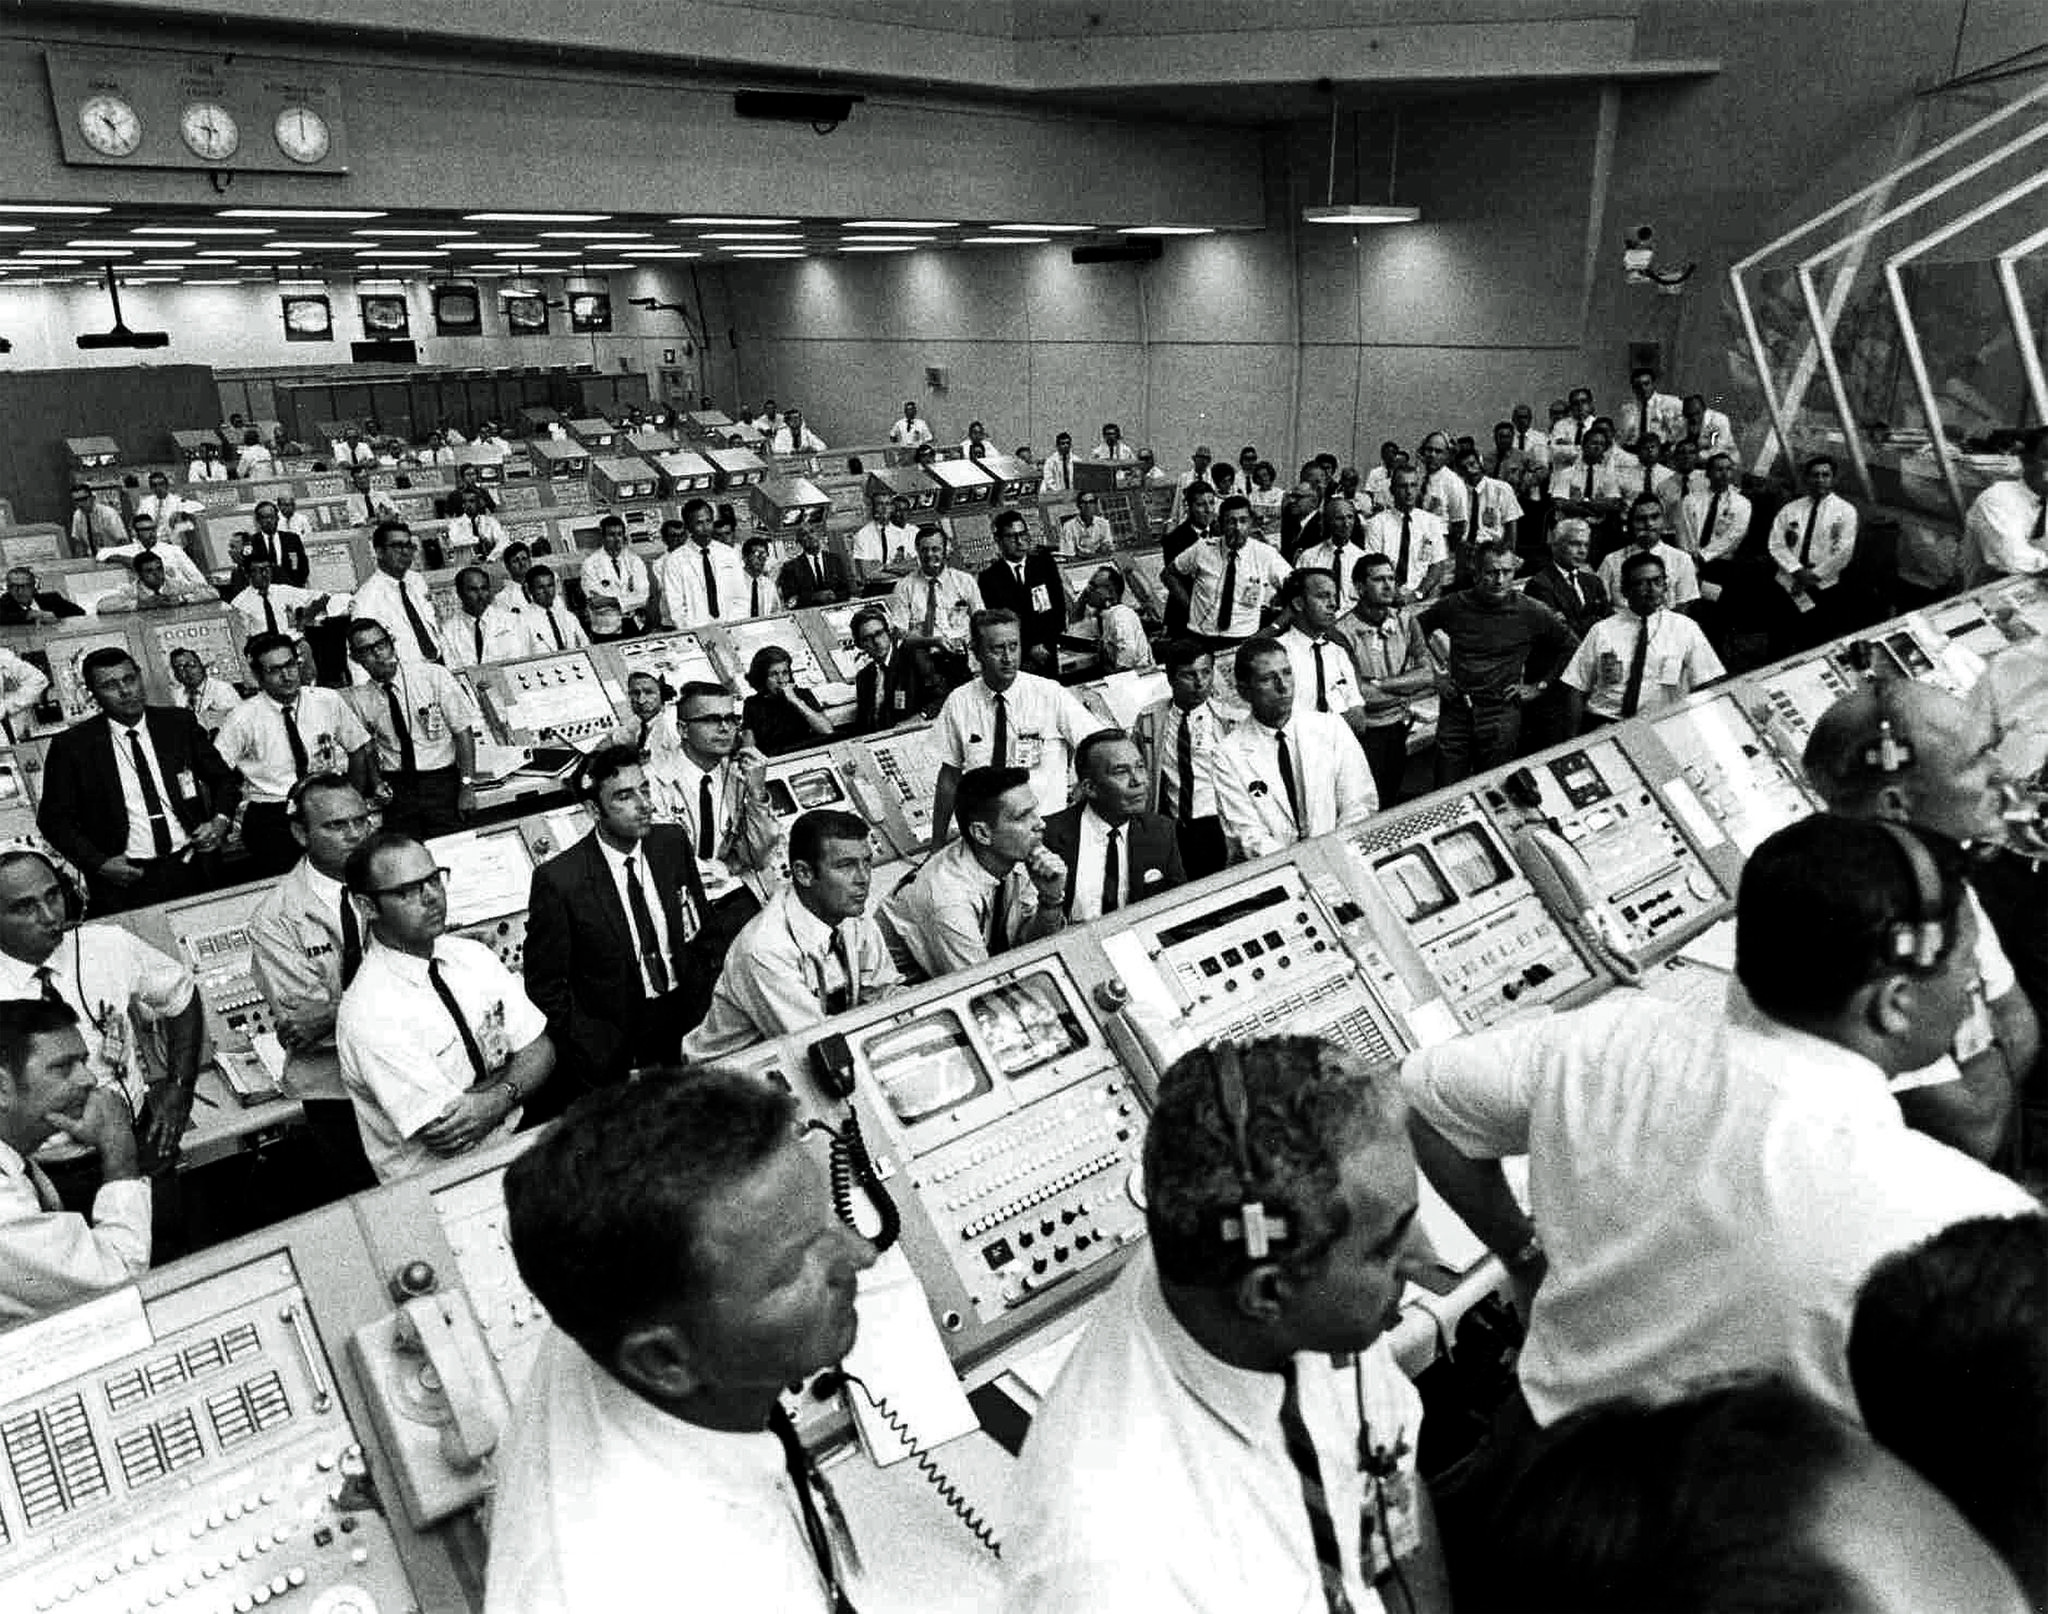 Apollo 11 control room